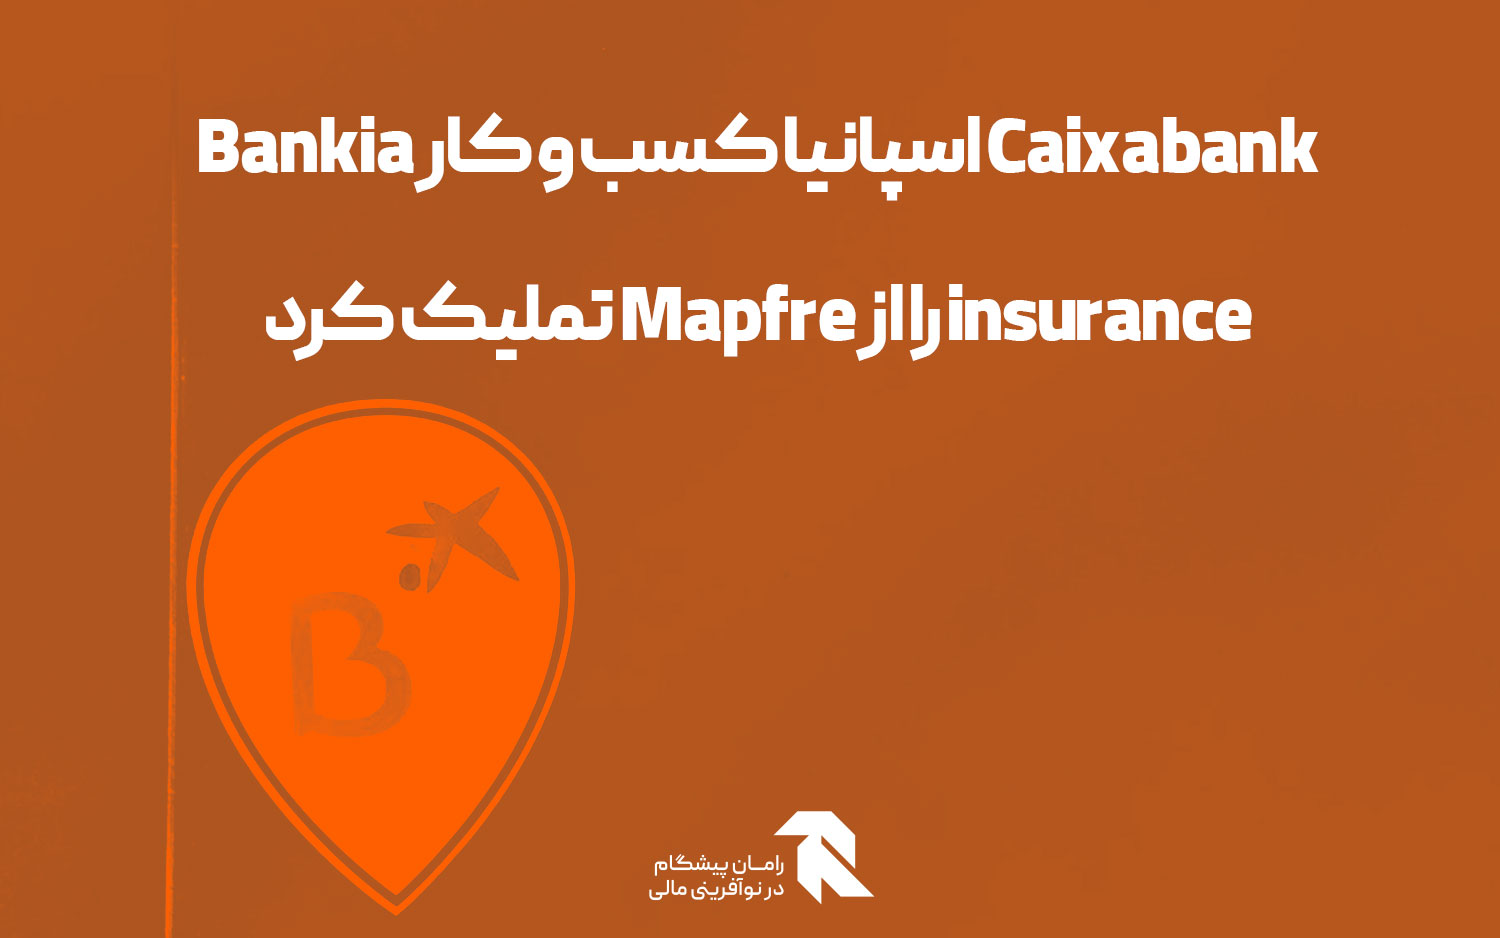 Caixabank اسپانیا کسب و کار Bankia insurance را از Mapfre تملیک کرد